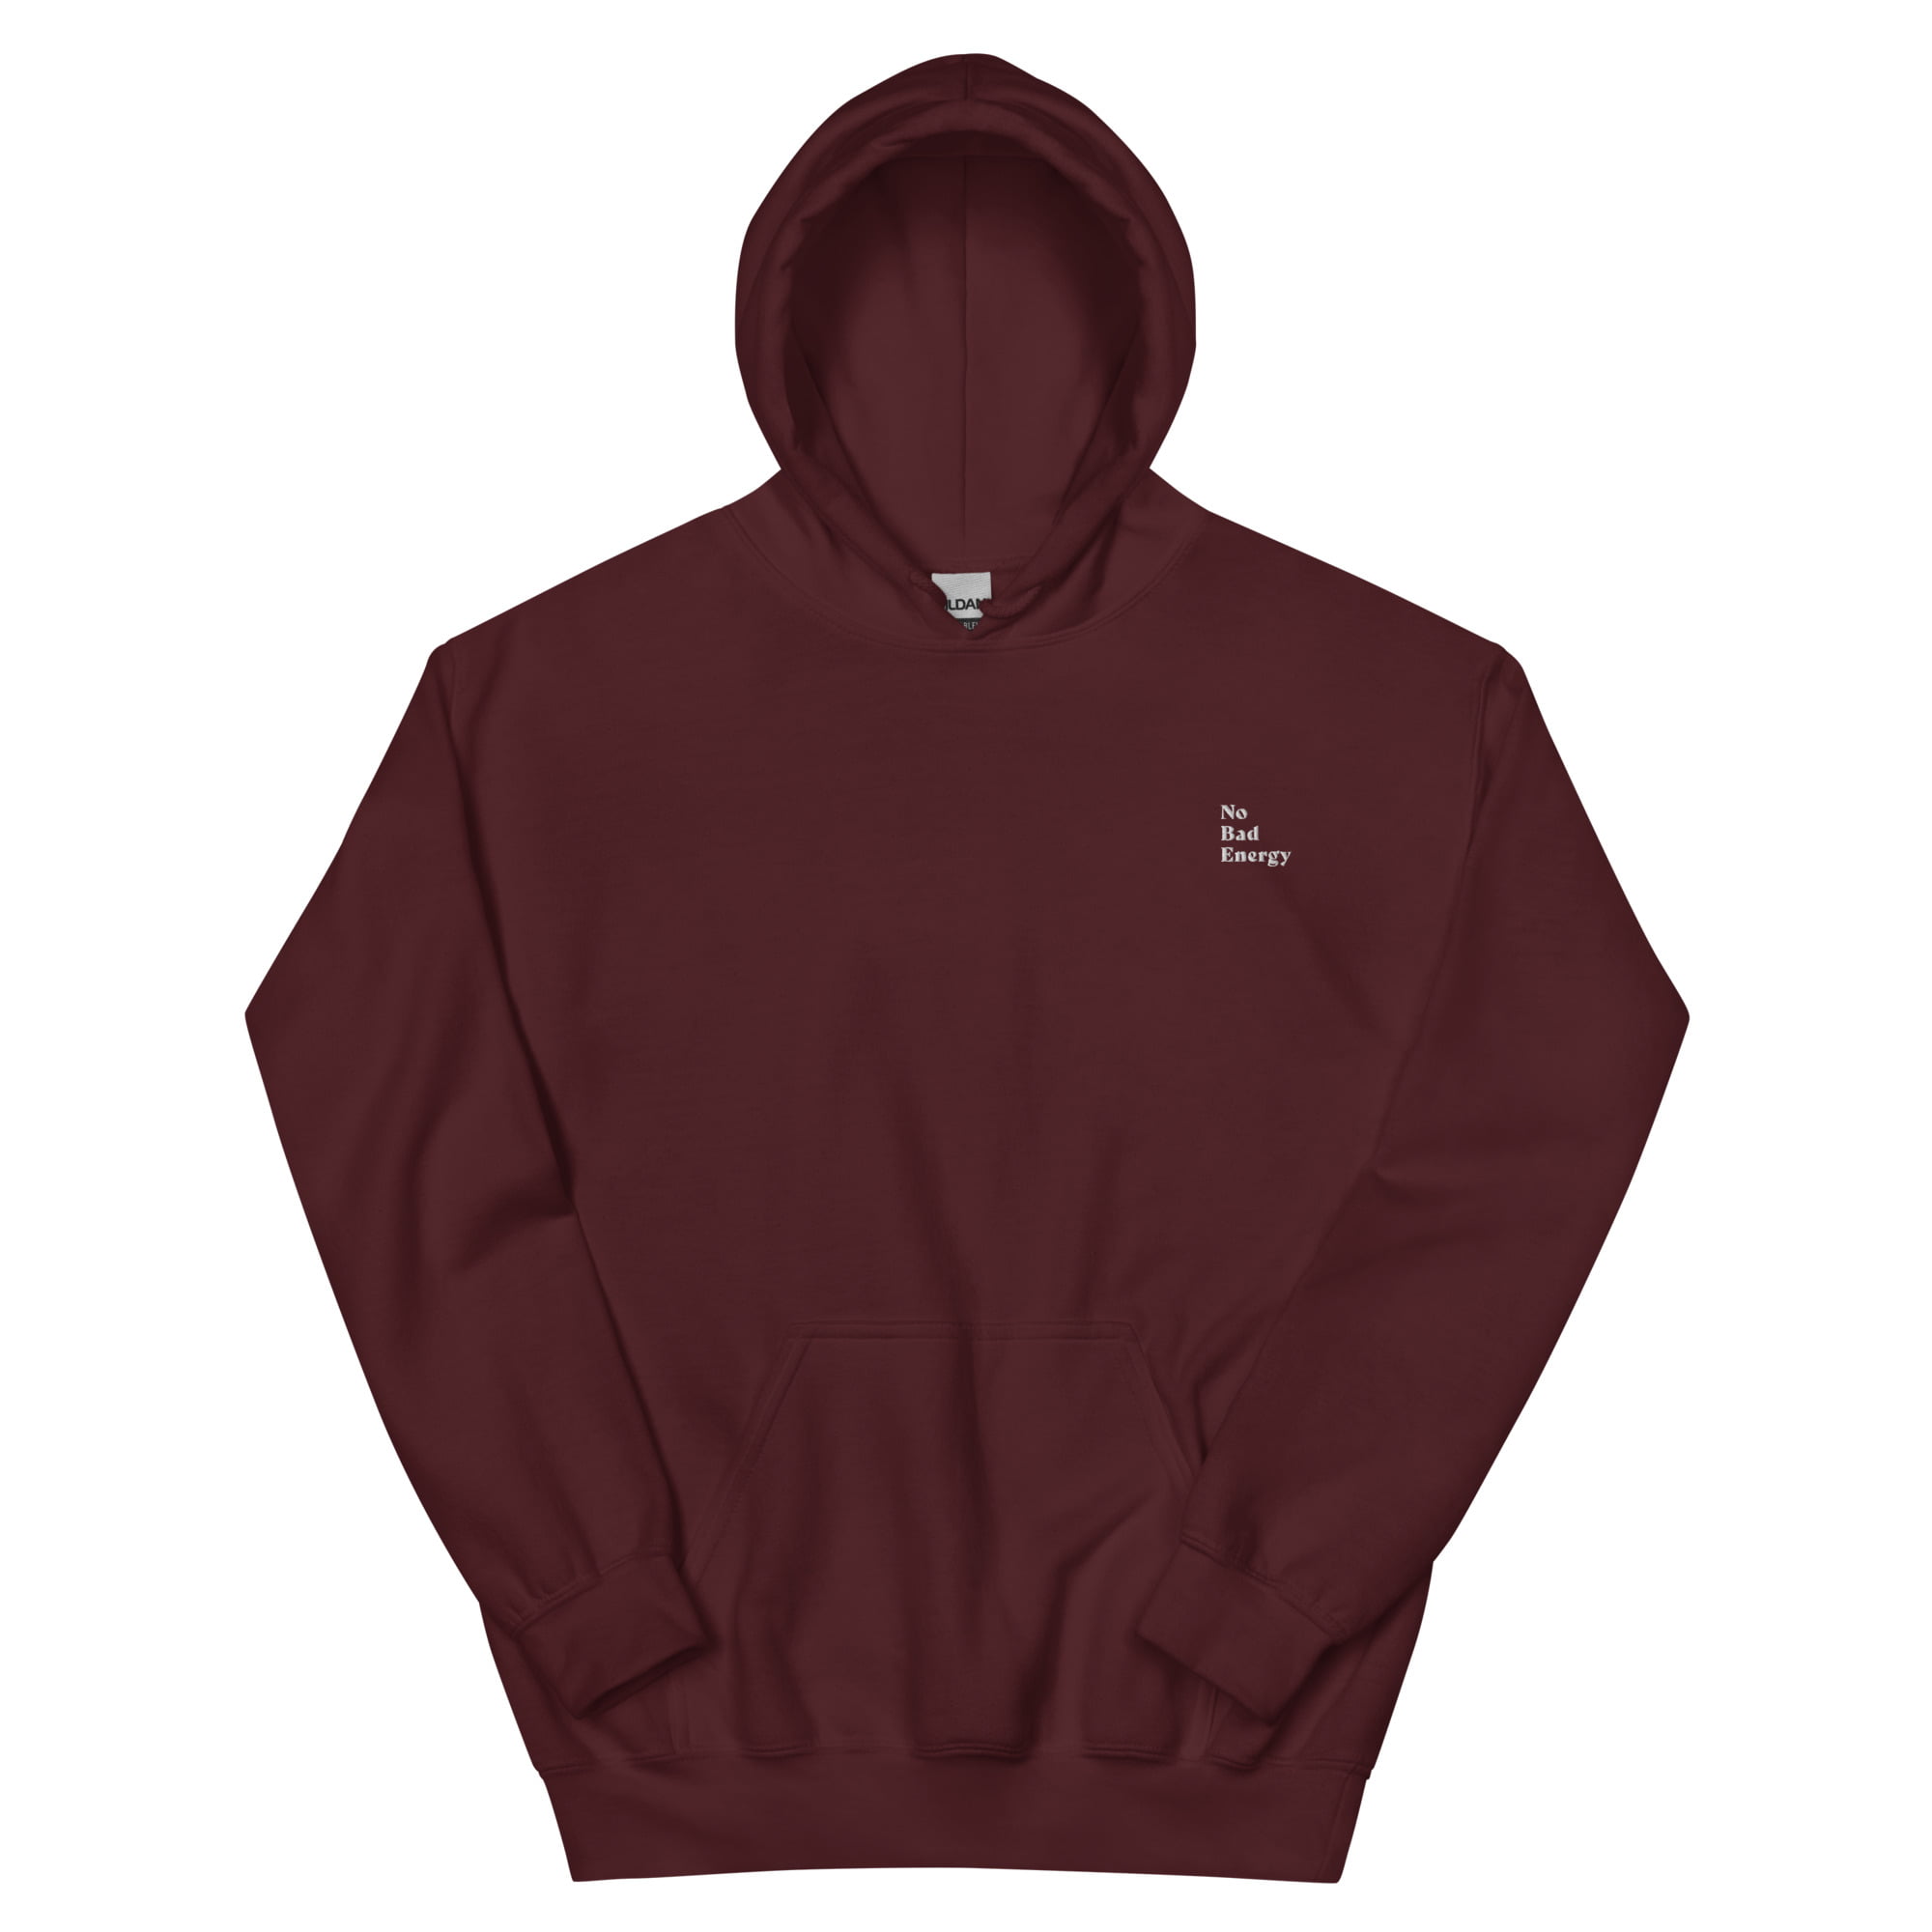 unisex heavy blend hoodie maroon front 653b73fd1ebad.jpg